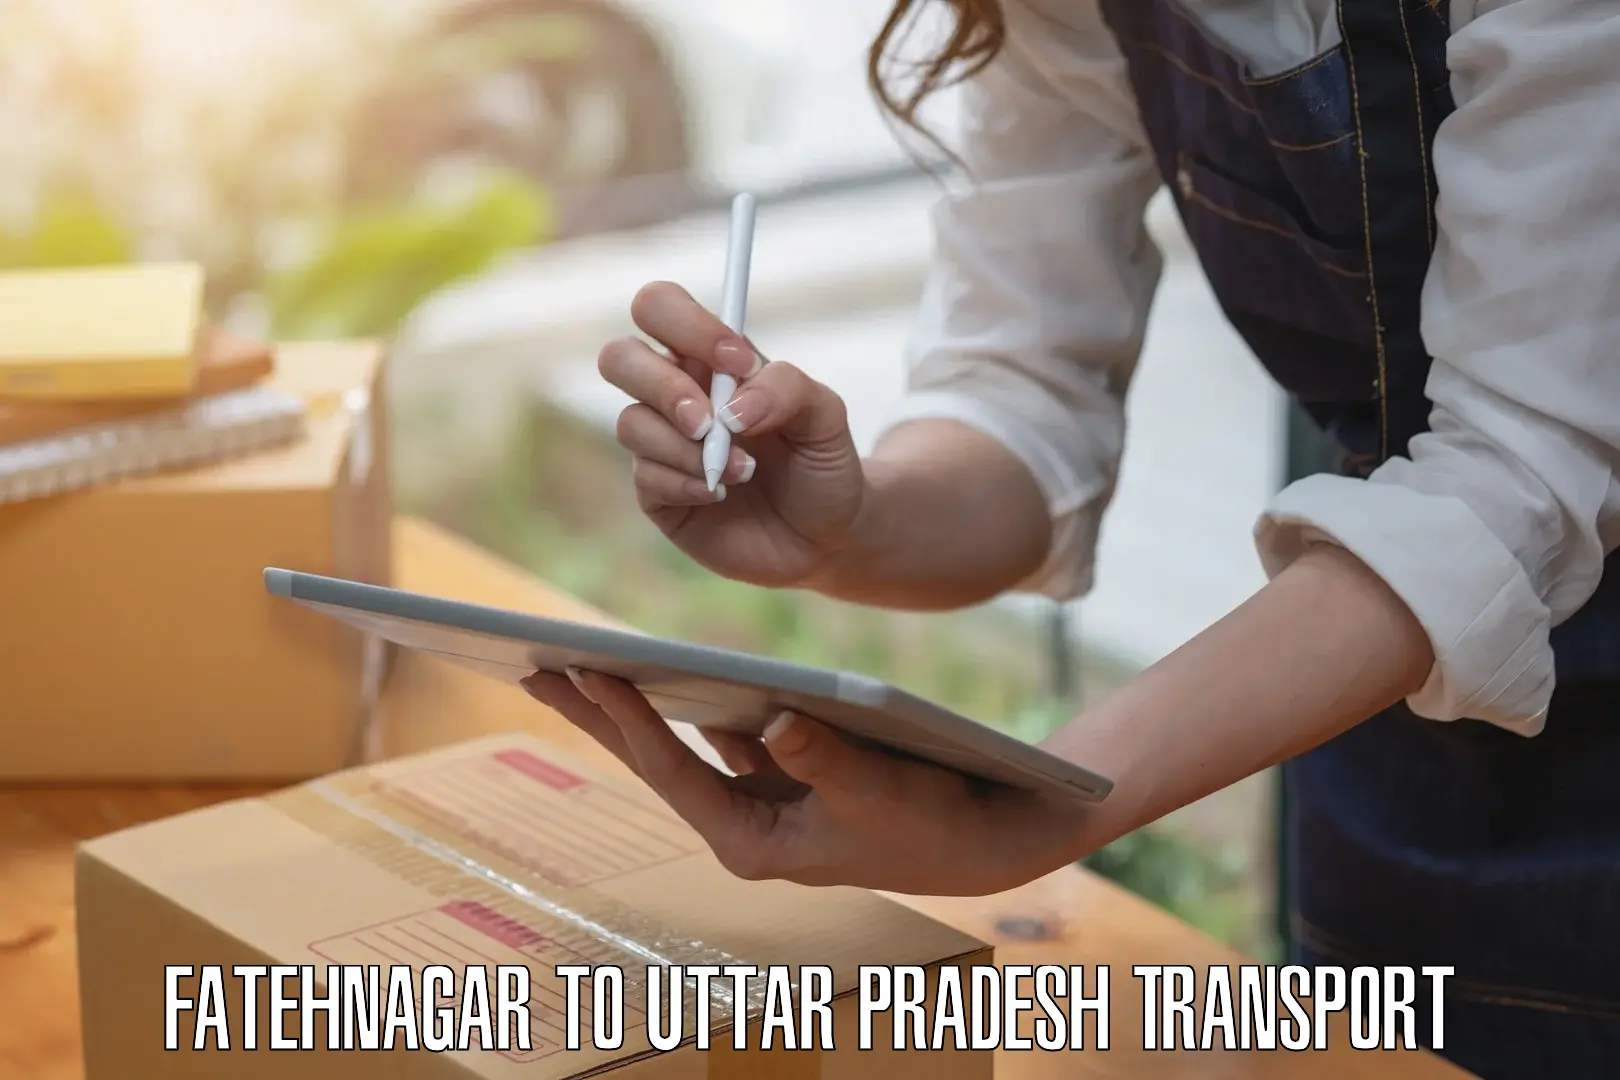 Transport shared services Fatehnagar to Sant Ravidas Nagar